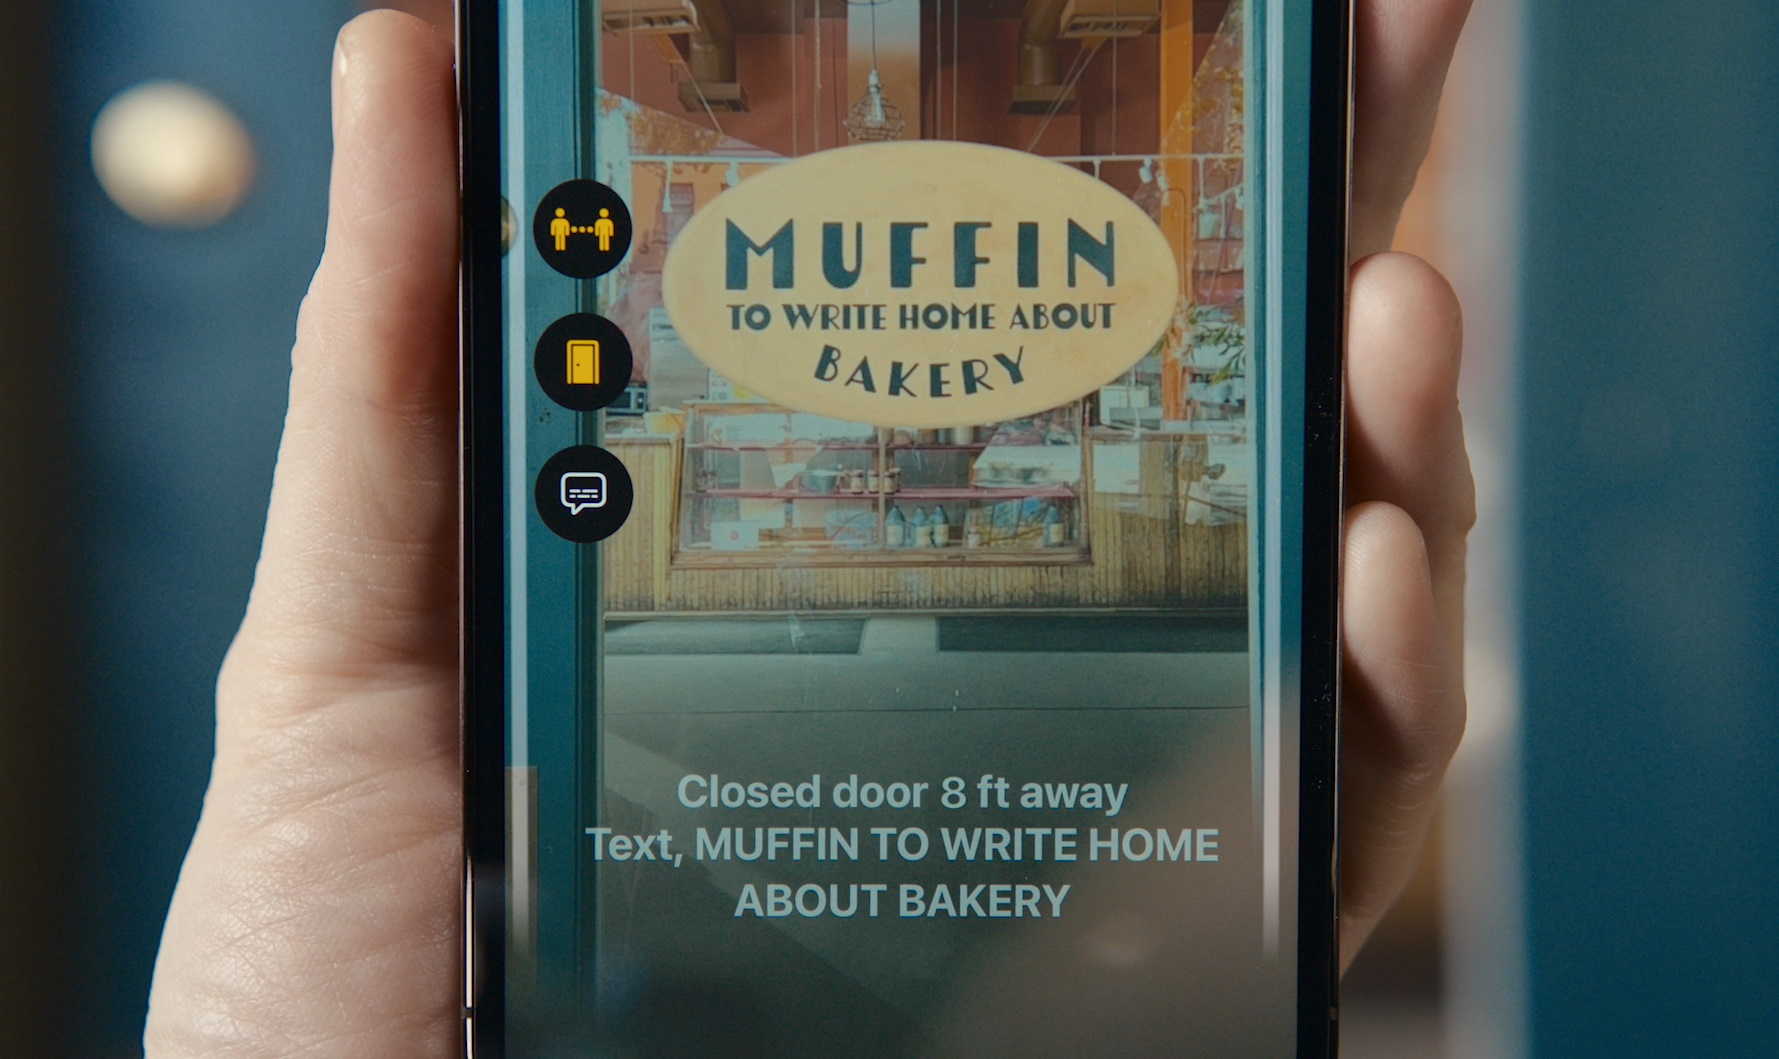 Imagen de un teléfono que muestra información sobre una puerta que ve: "Muffin para escribir en casa sobre panadería."